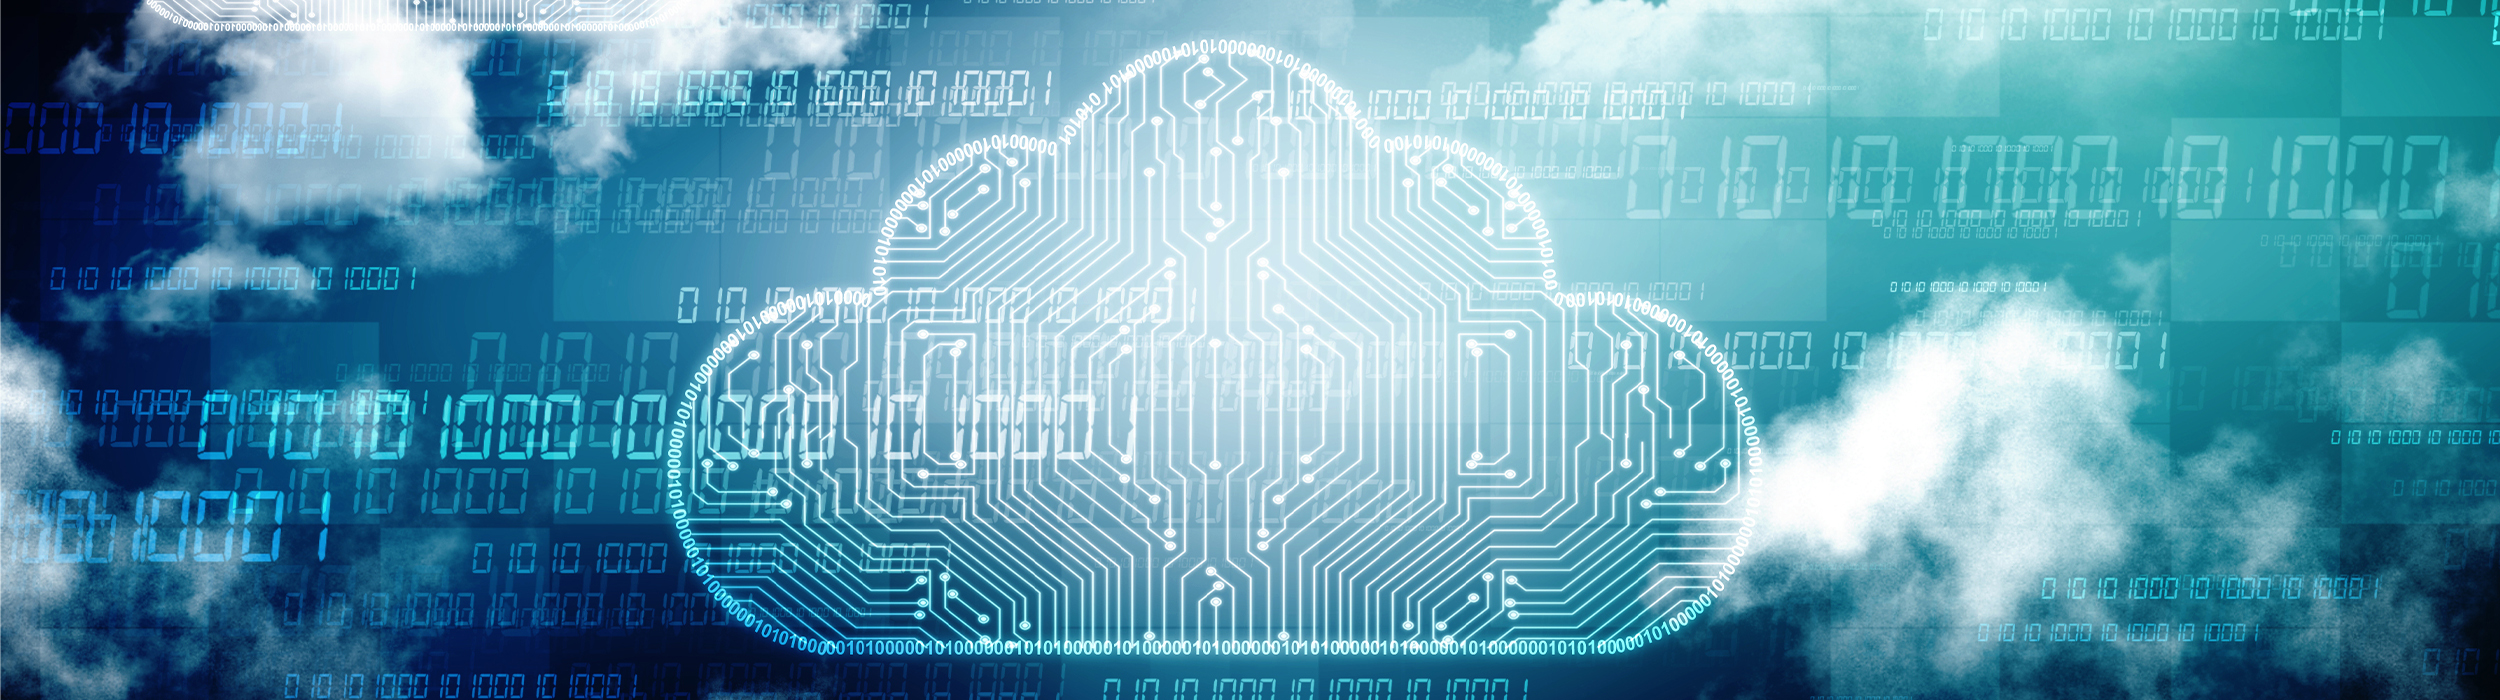 Por que minha empresa precisa migrar para Cloud Computing?